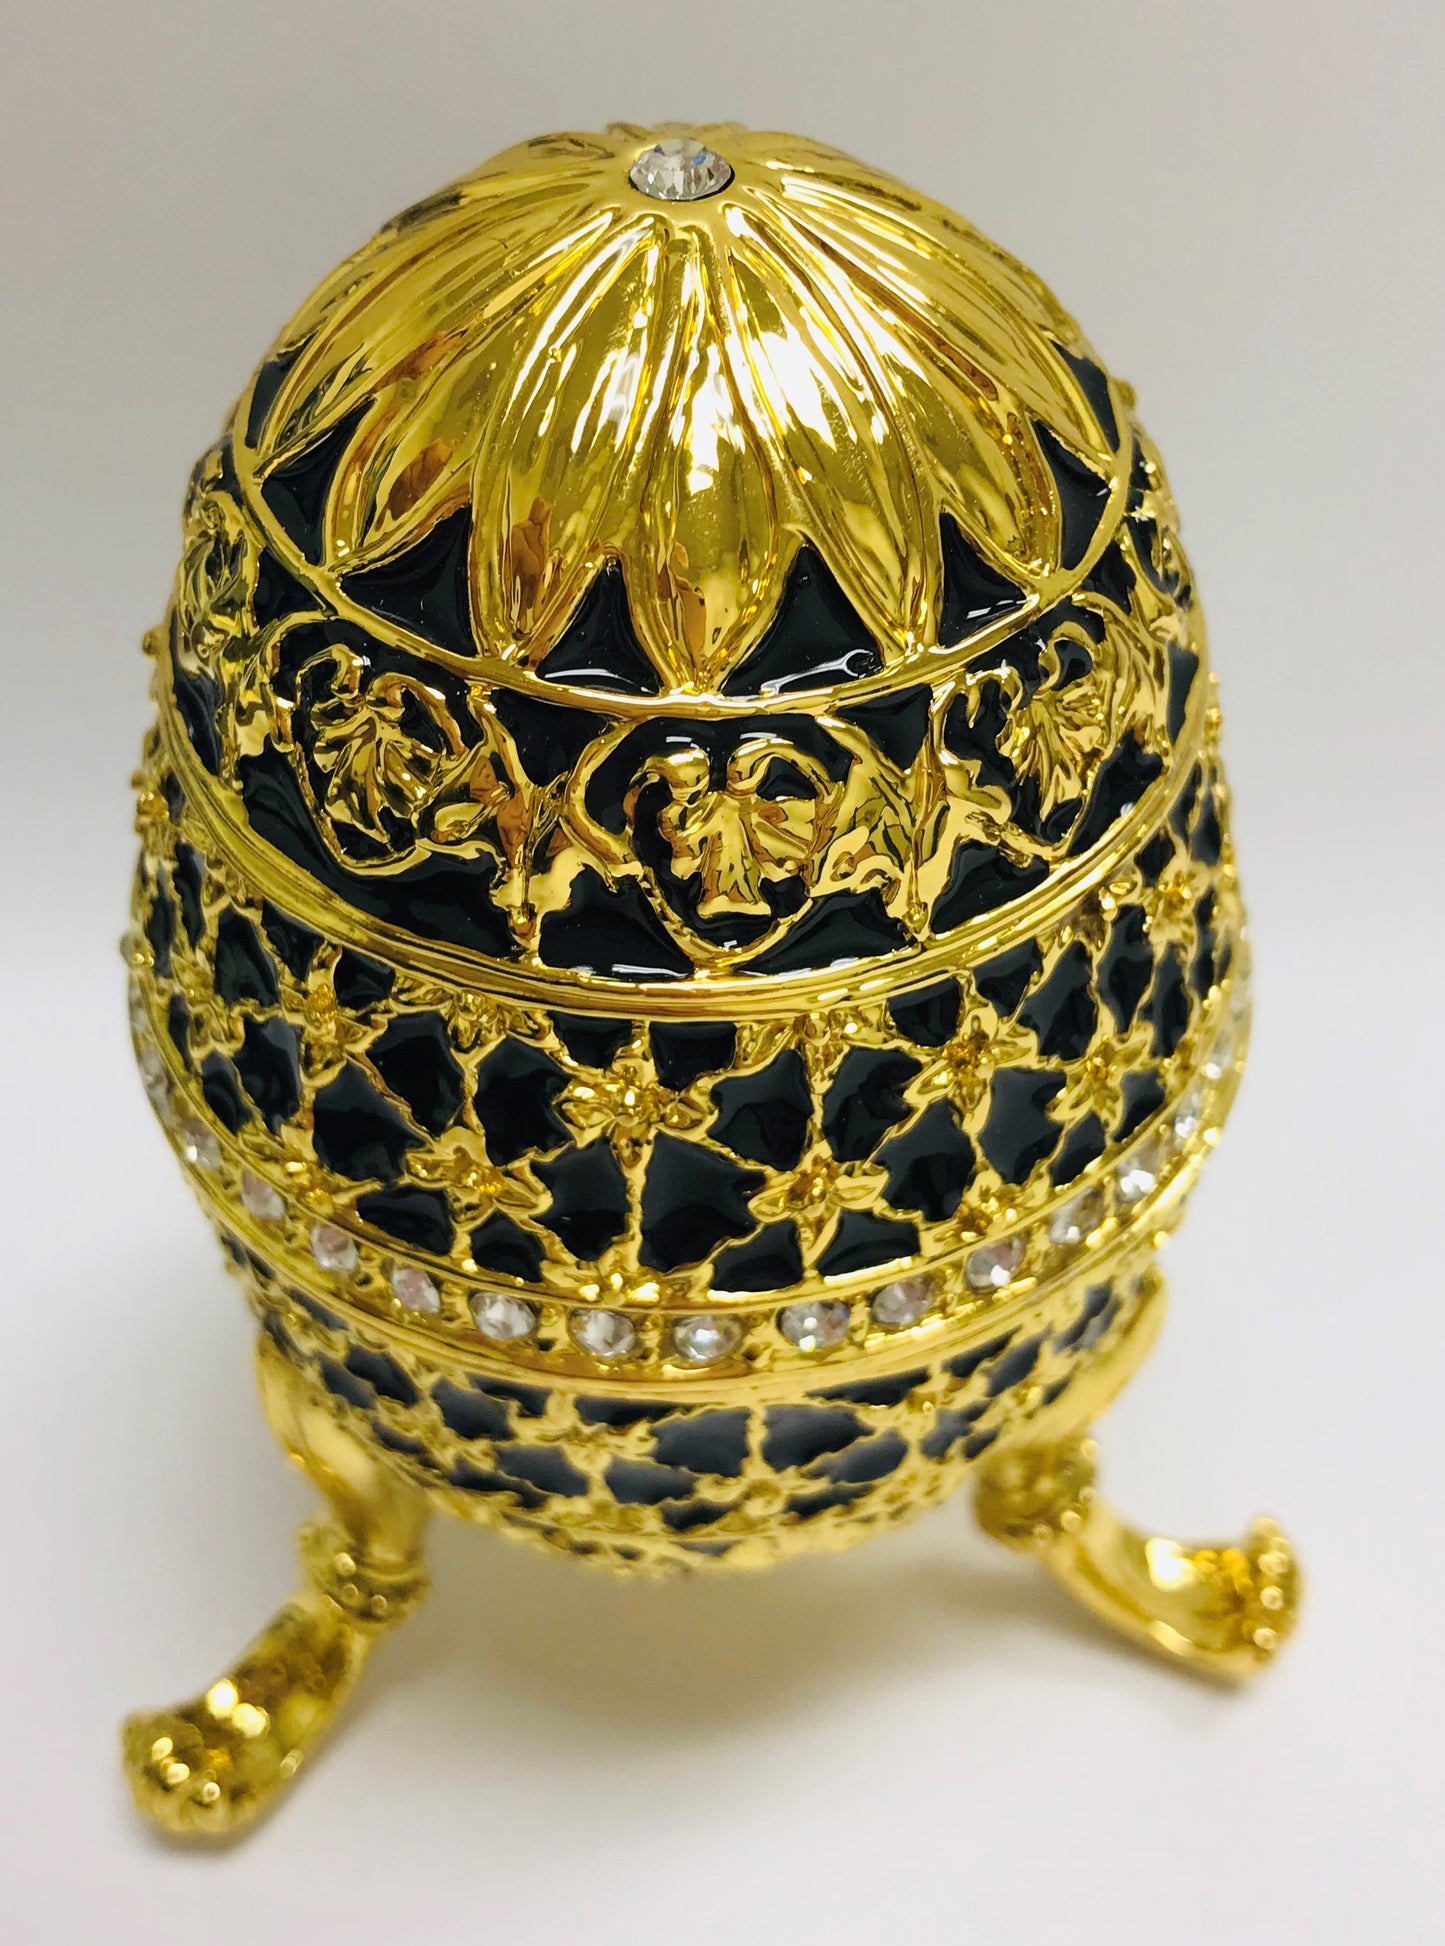 Cristiani Collezione Gold Black Musical Egg Trinket Box.